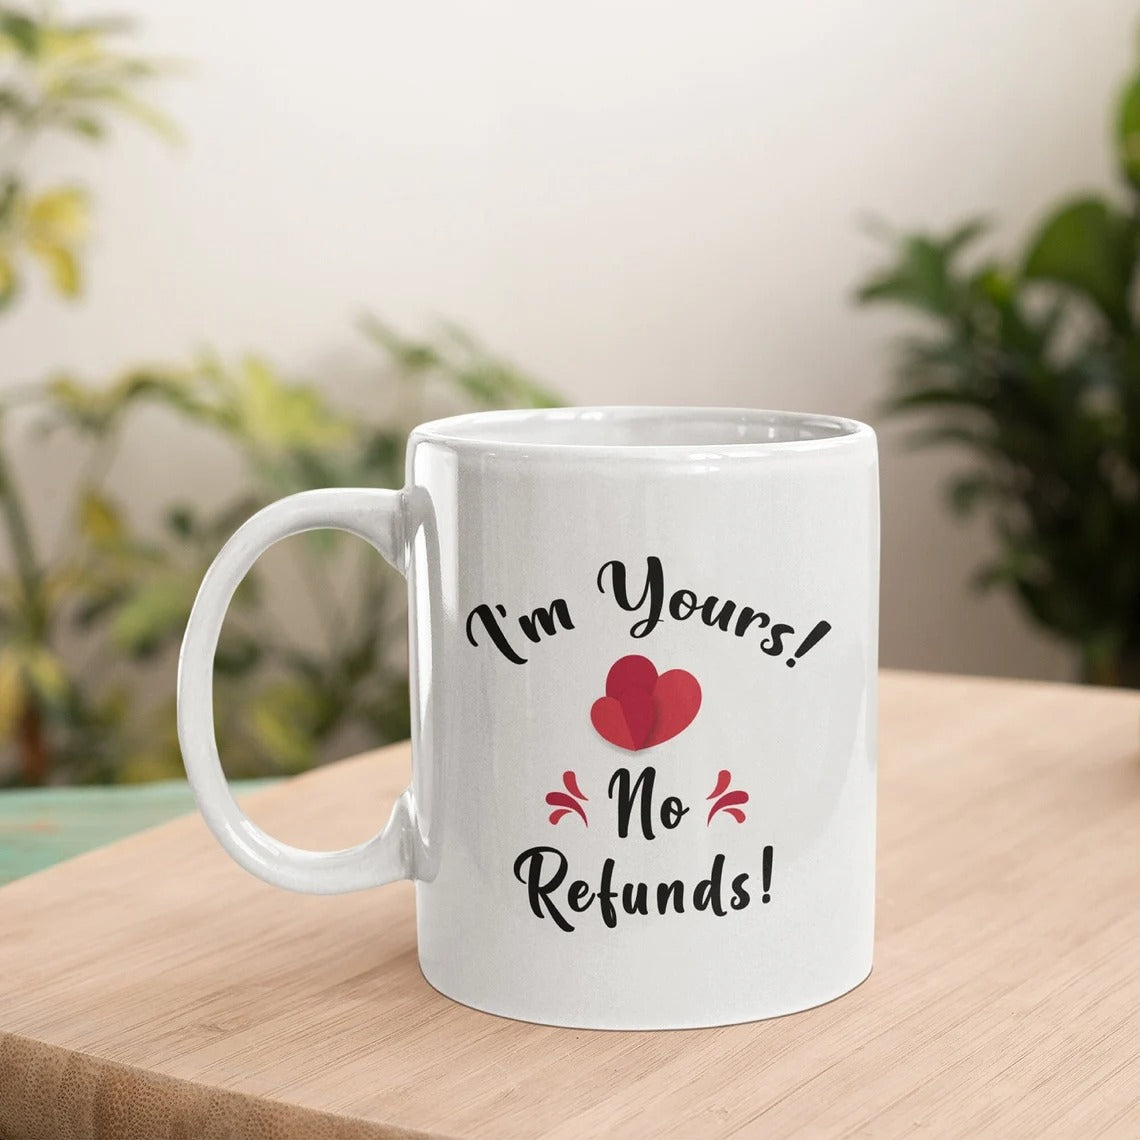 I'm Yours No Refunds Ceramic Mug